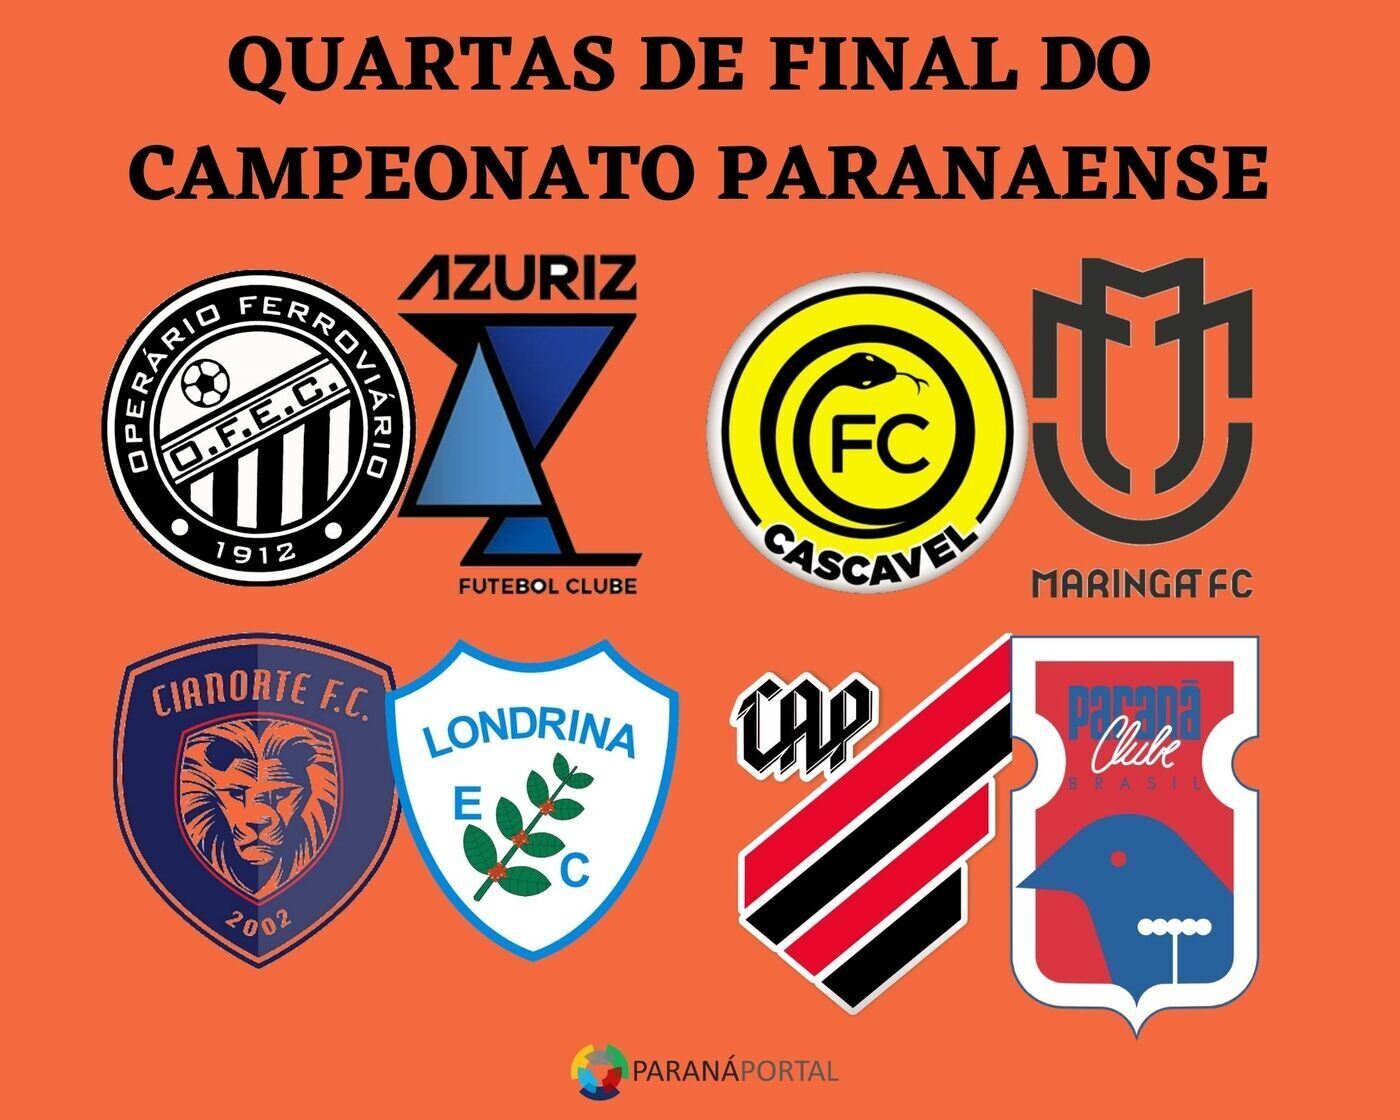 Campeonato Paranaense: Veja os duelos, datas e horários das quartas de final